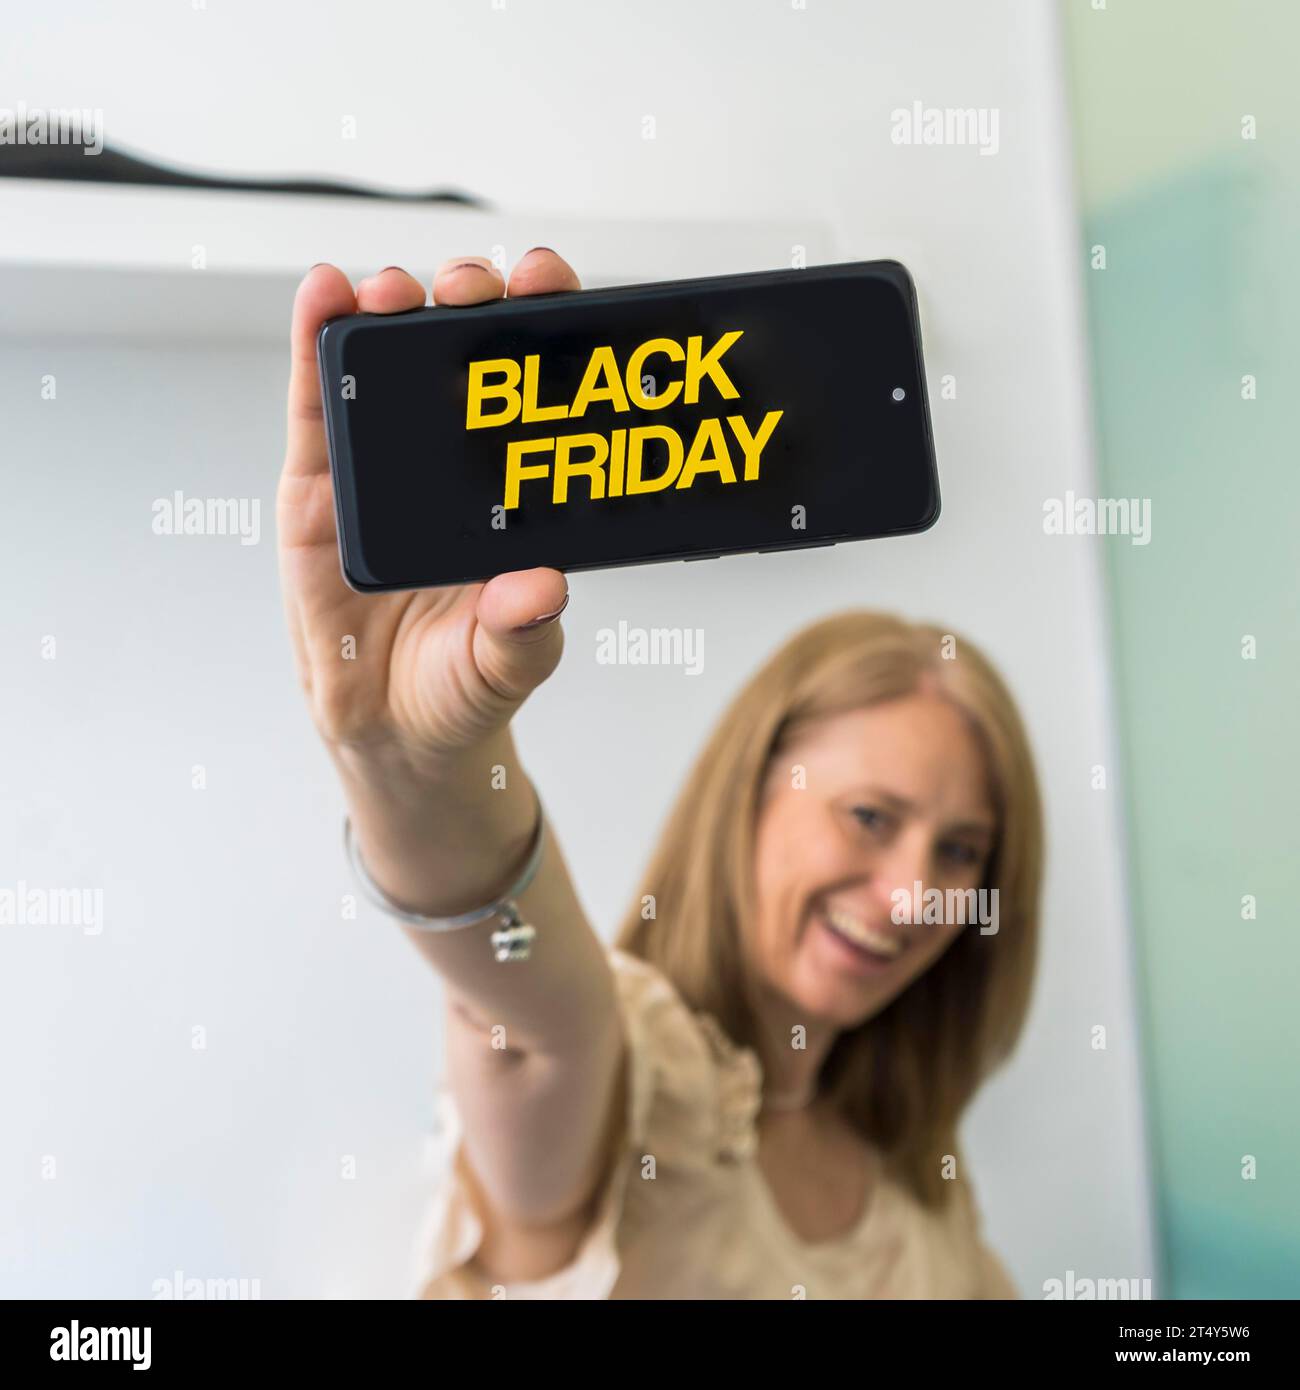 Une femme montrant un smartphone avec une publicité Black Friday à l'écran Banque D'Images